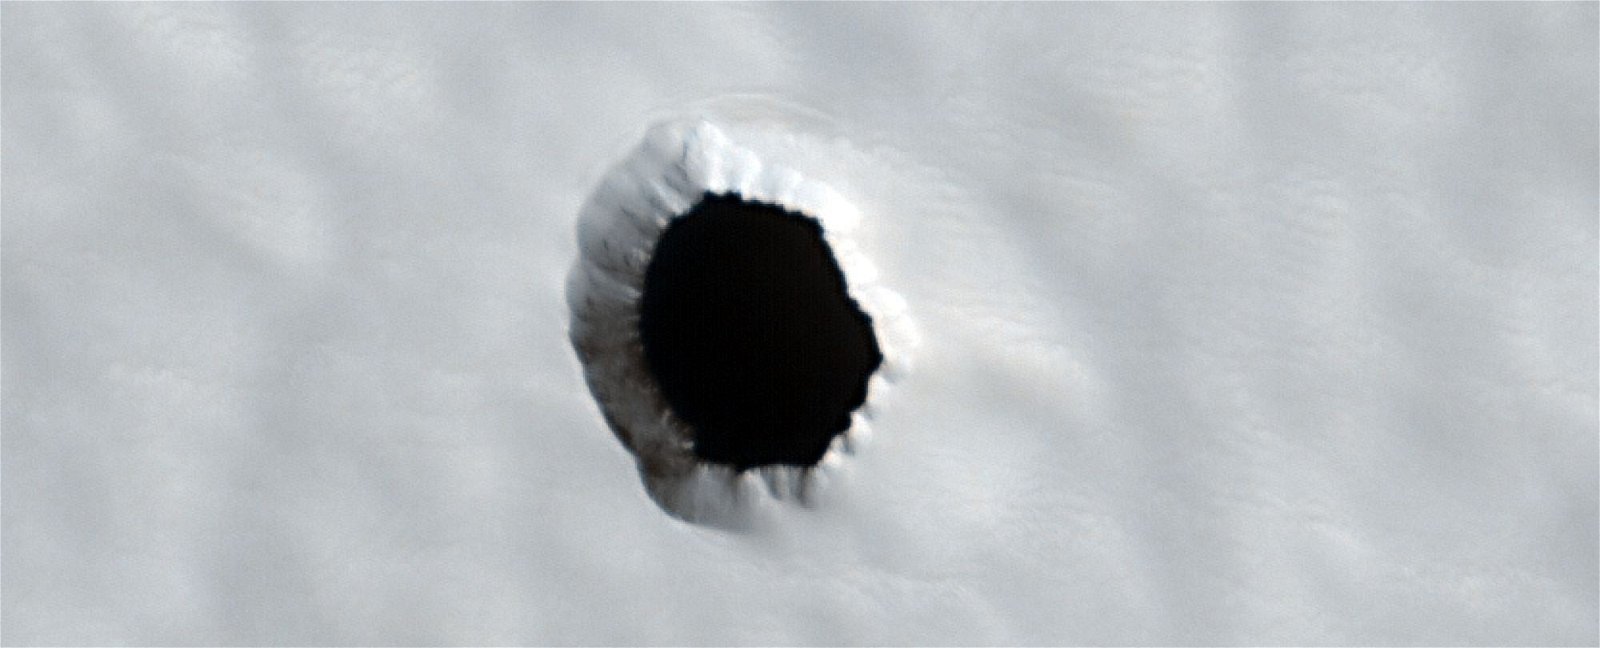 El extraño agujero en Marte que descoloca a la ciencia. Nadie sabe que hay en su interior